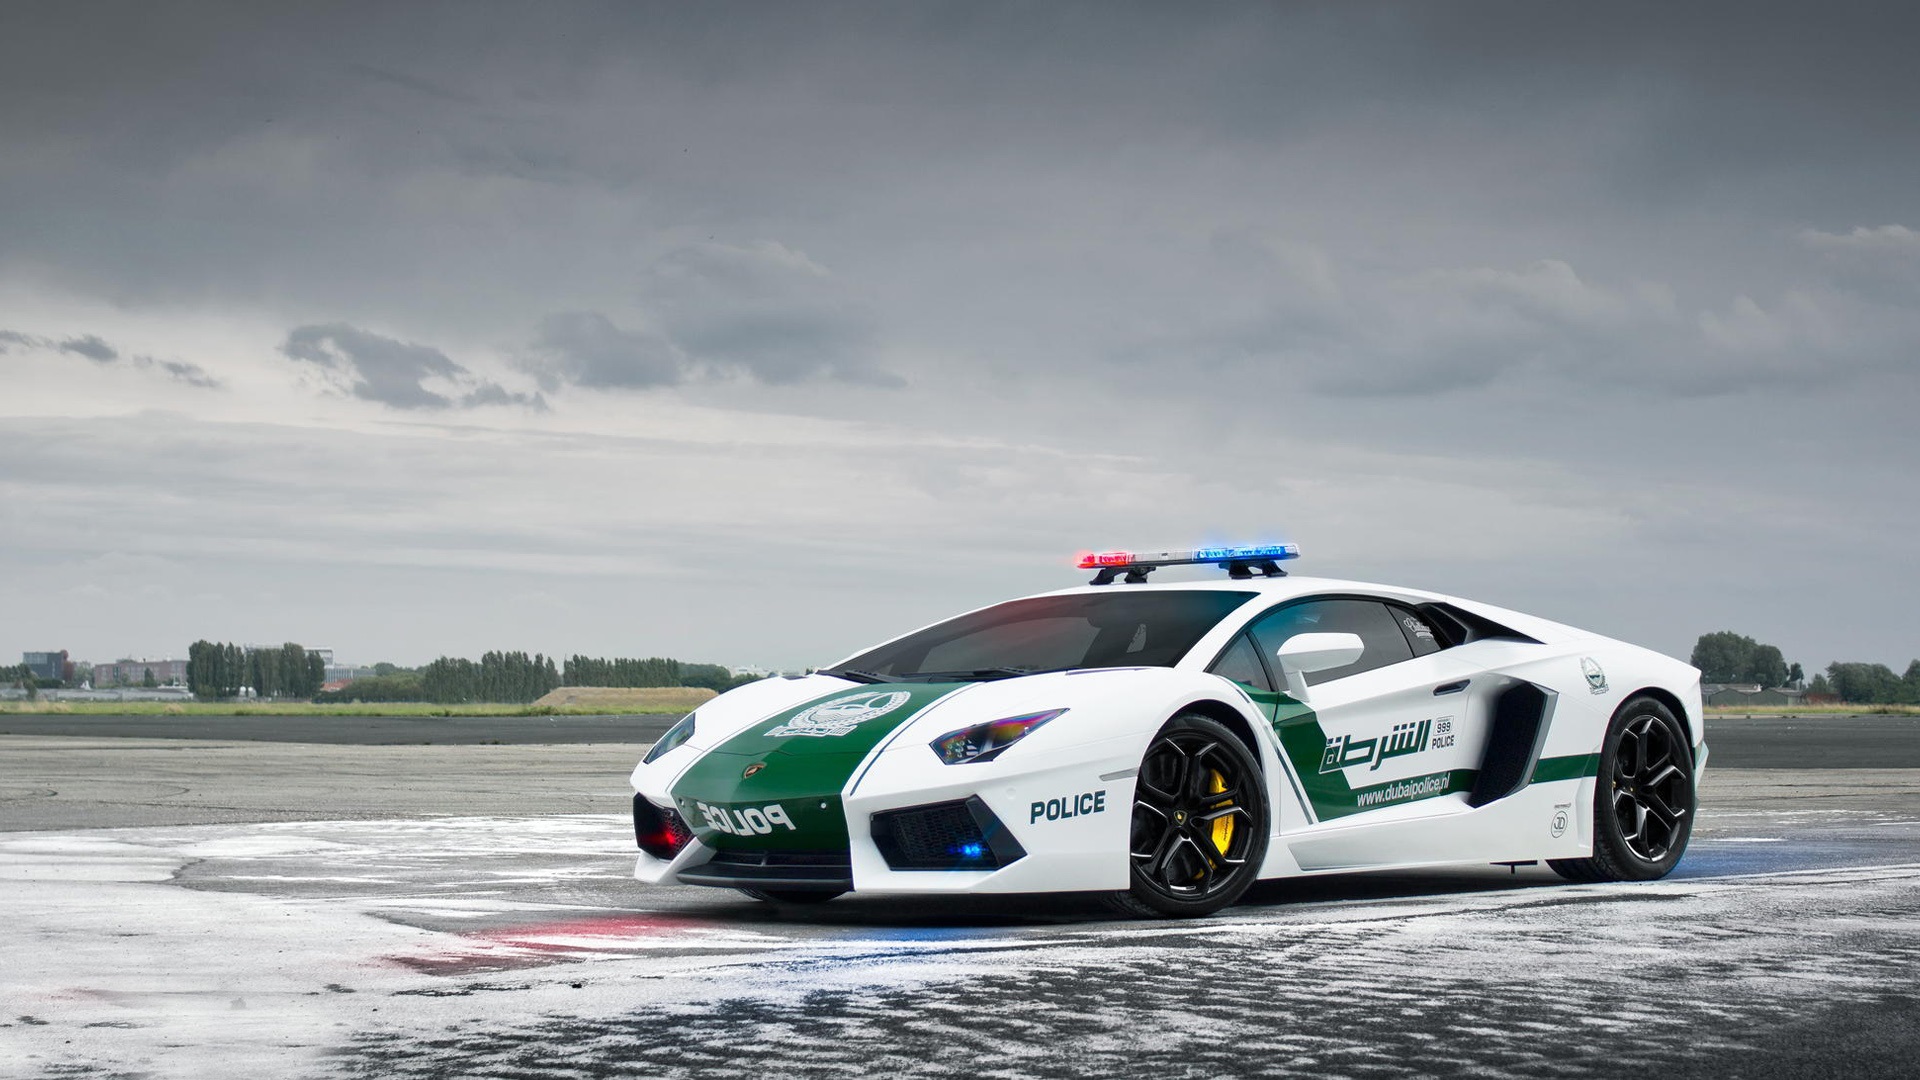 Obrázek auta Lamborghini Aventador jako policejní auto.